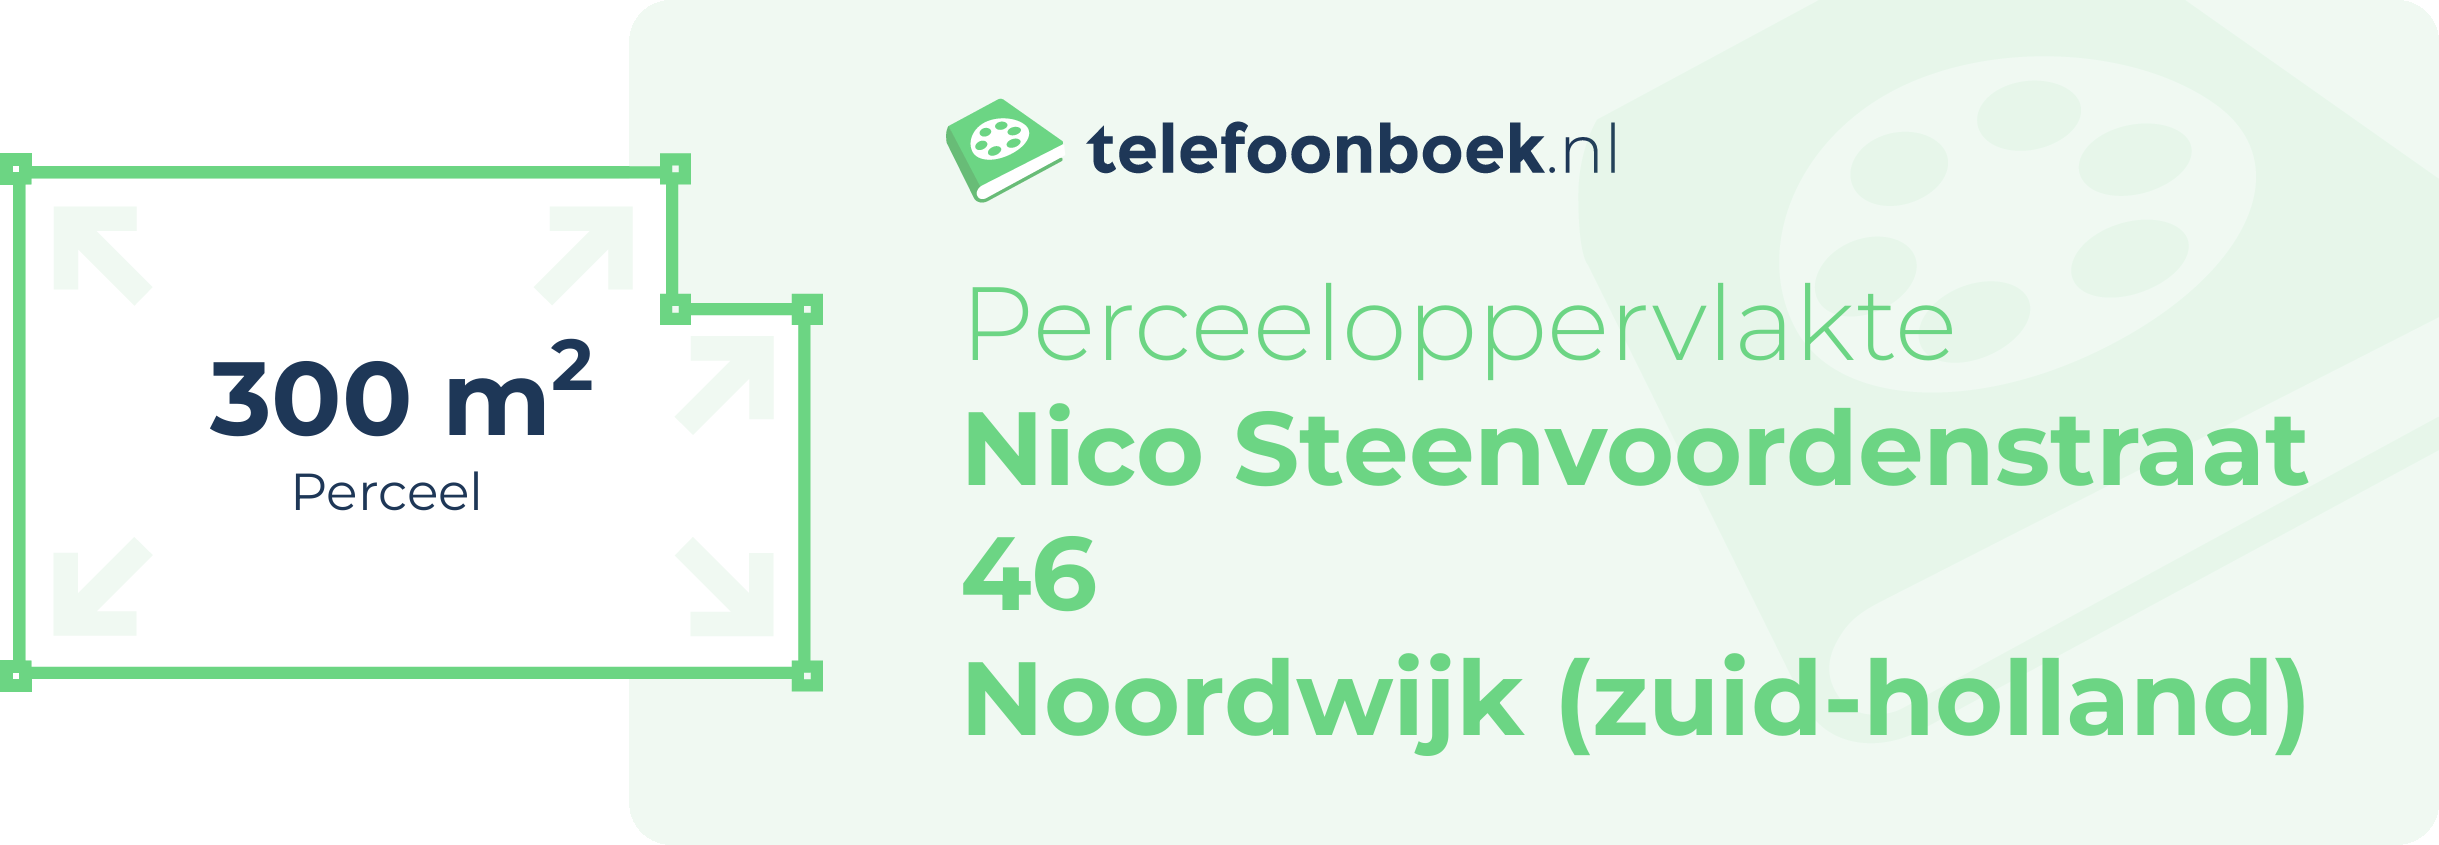 Perceeloppervlakte Nico Steenvoordenstraat 46 Noordwijk (Zuid-Holland)